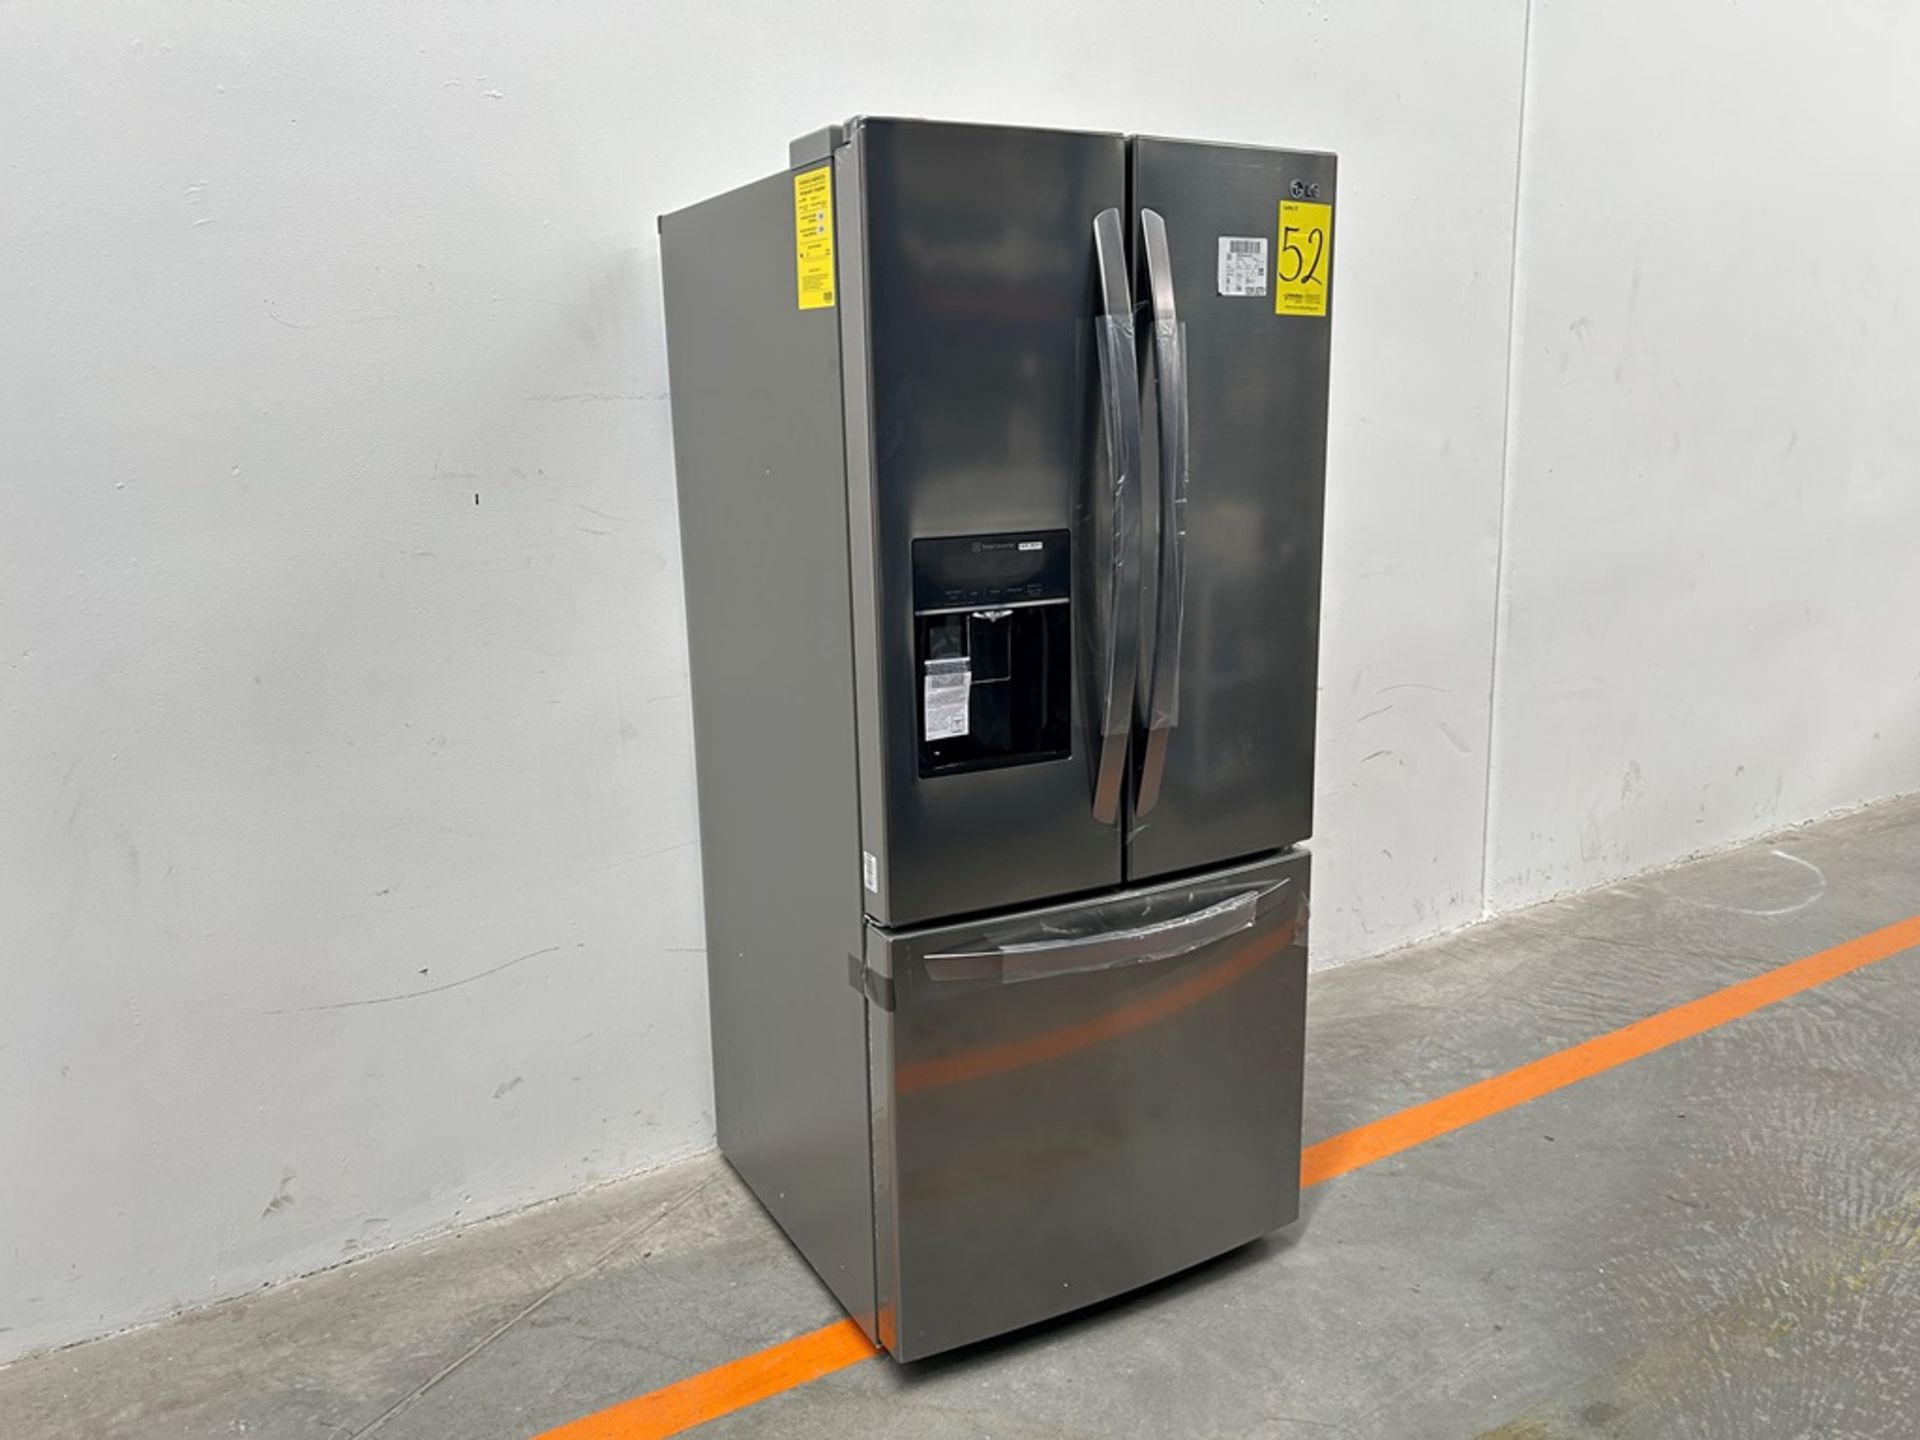 (NUEVO) Refrigerador con dispensador de agua Marca LG, Modelo GM22SGPK, Serie 28061, Color GRIS - Image 3 of 11